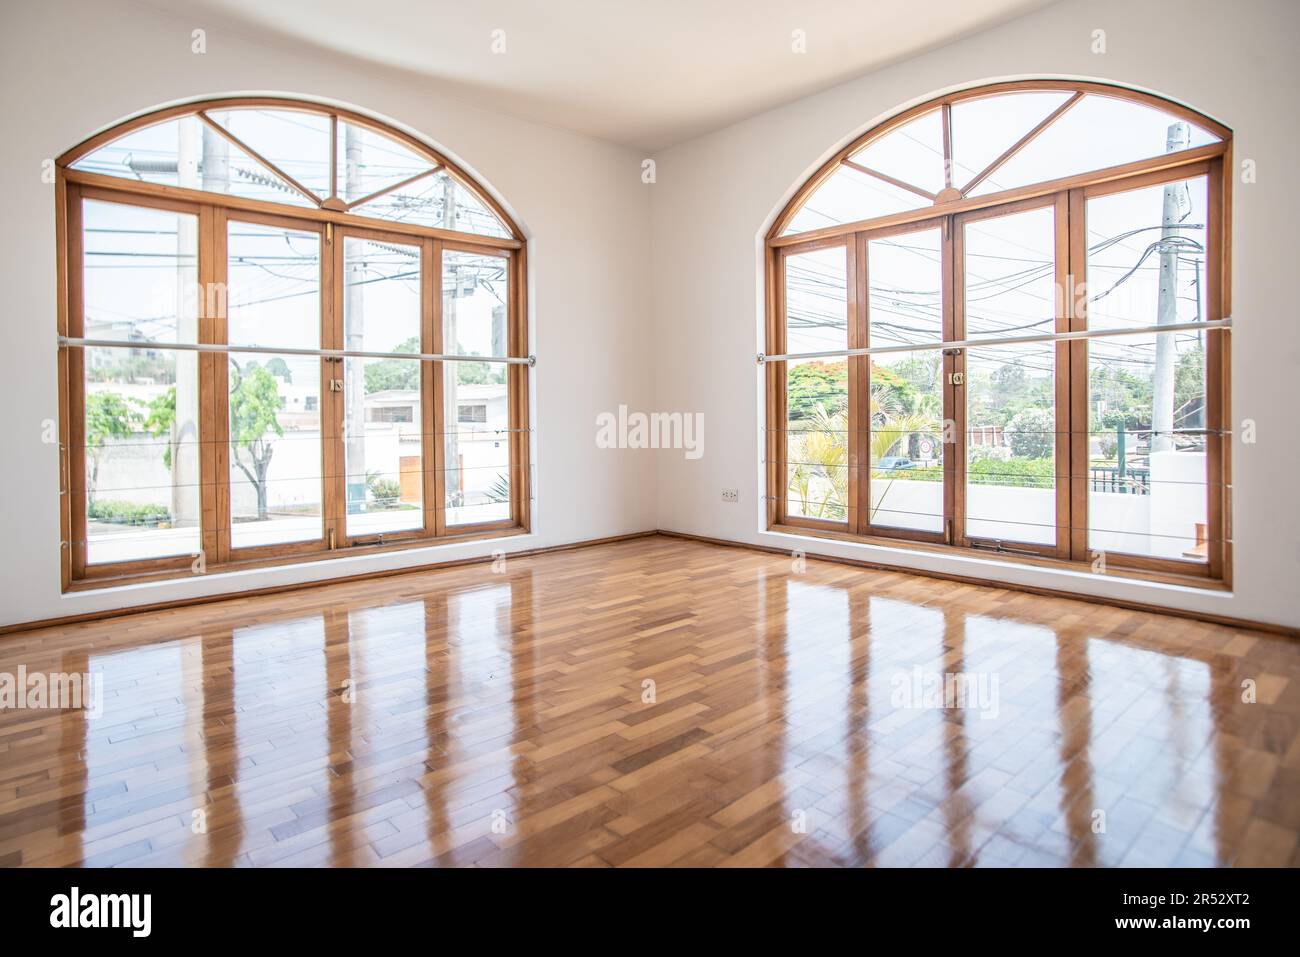 ventanales de habitacion en casa de campo iluminados, con acabados de parquet brillante y paredes color blanco Stock Photo